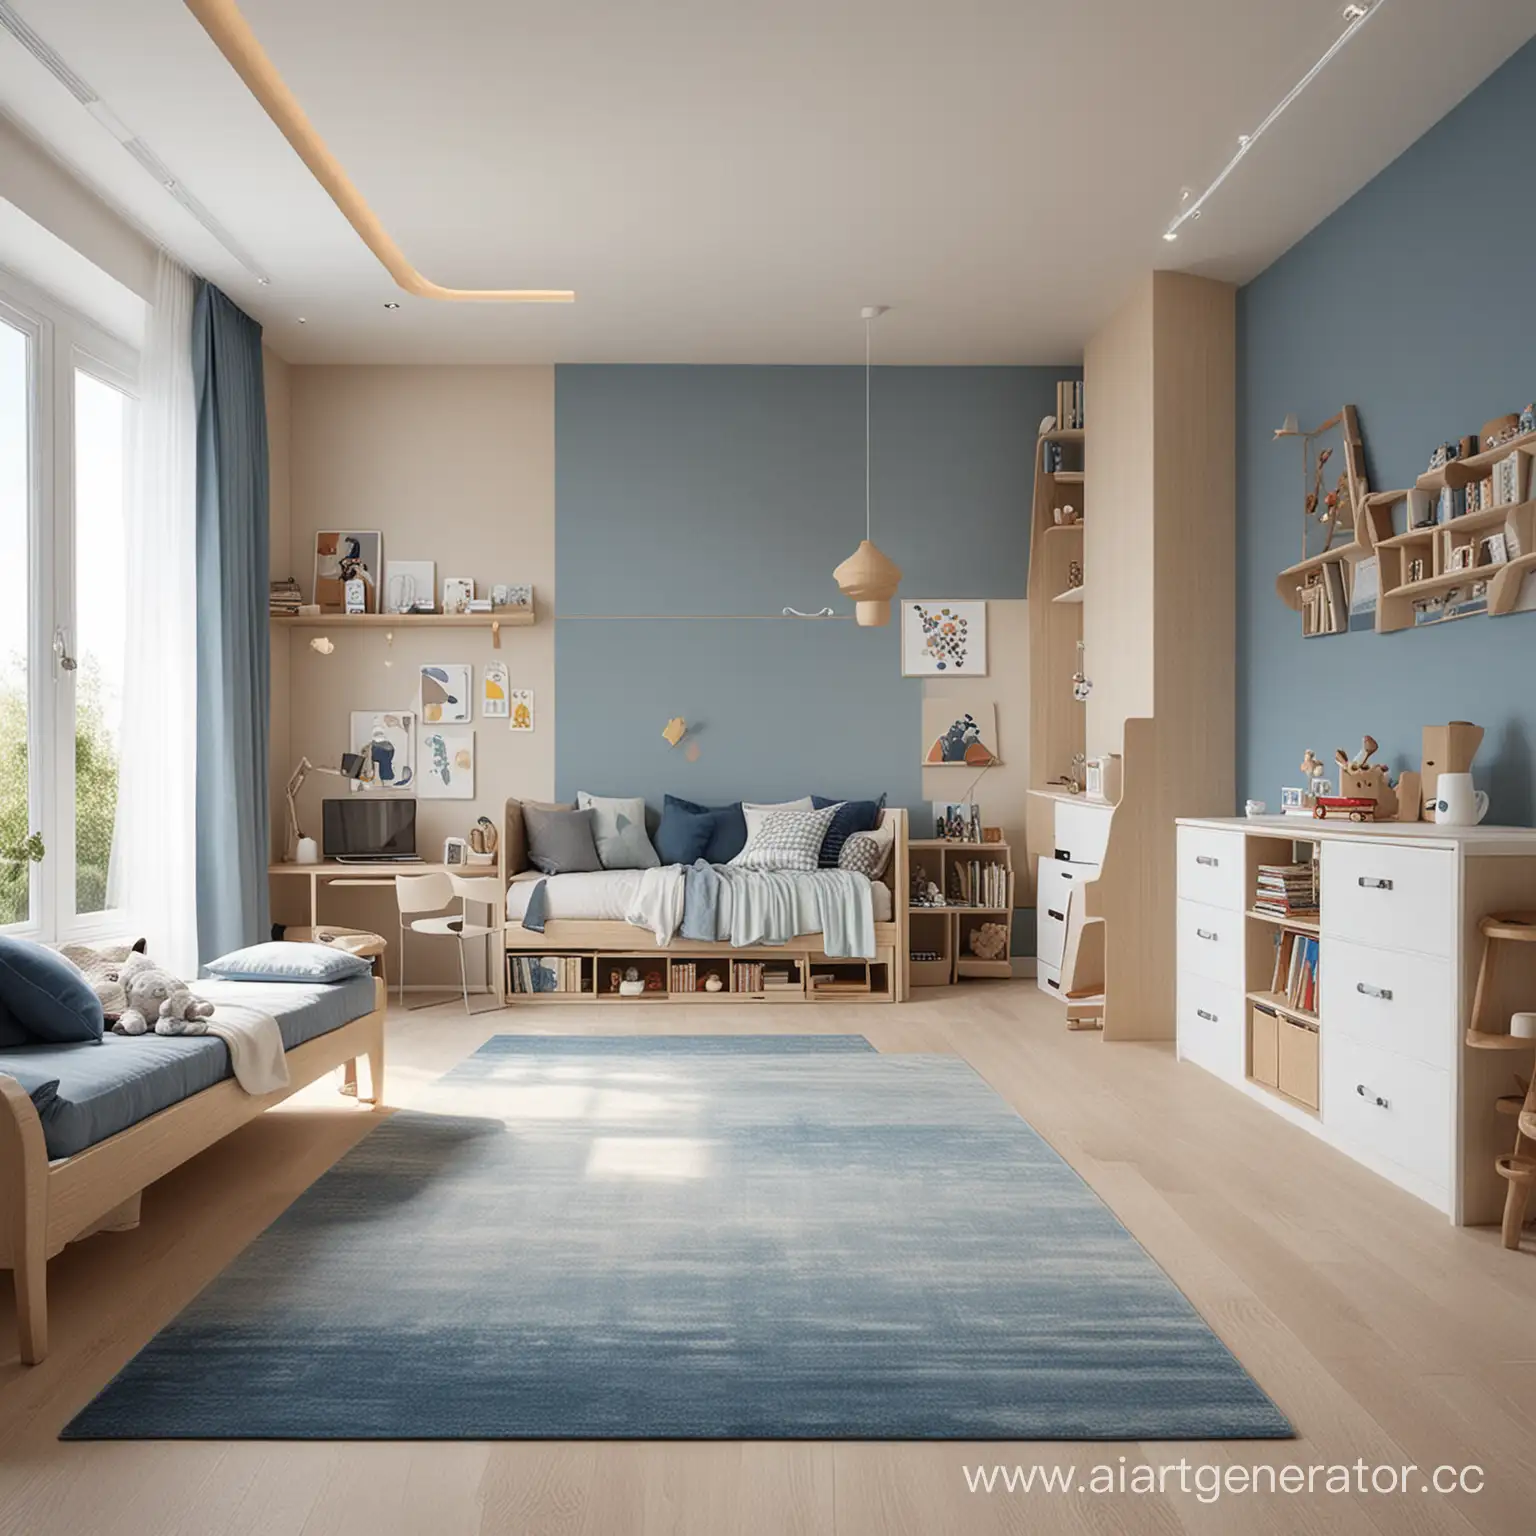 Сгенерируй детскую комнату с бежевыми и голубыми акцентами, мебелью, размером 900х1200 px, чтобы на полу было место для вставки изображения ковра